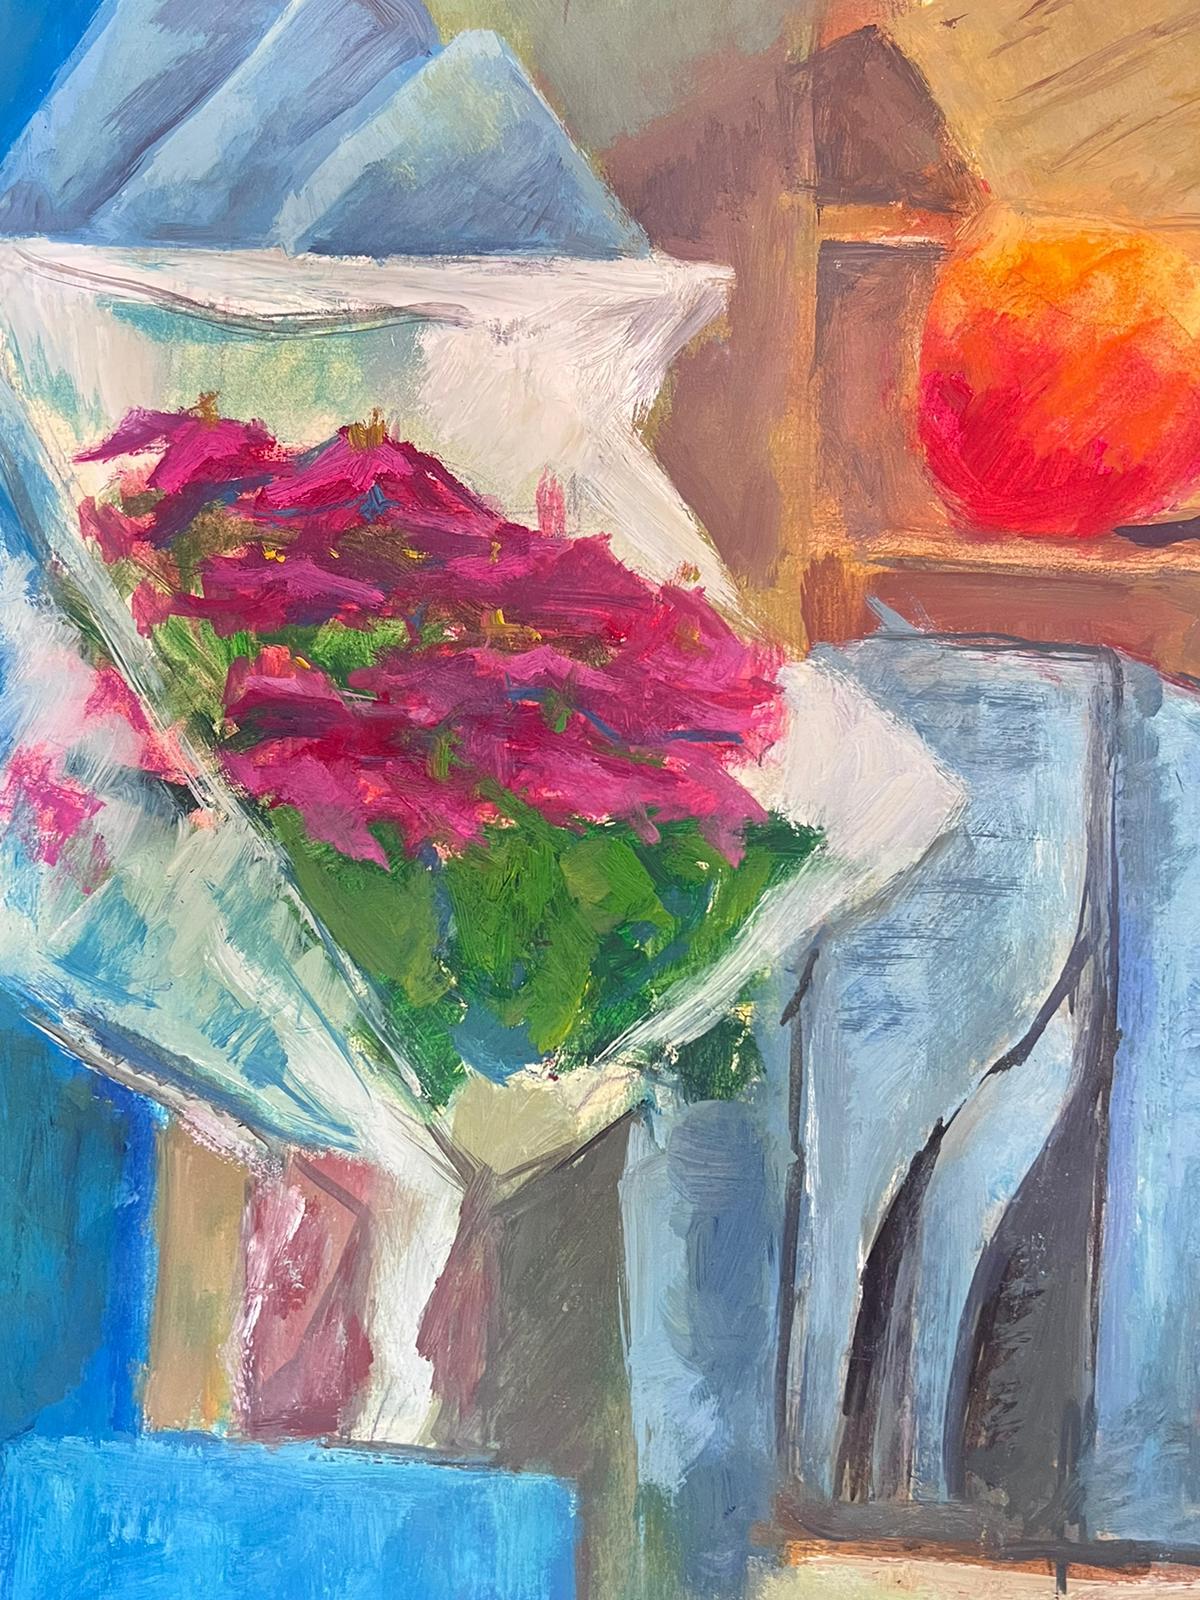 Peinture française abstraite du 20ème siècle, journaux et fleurs dans un vase - Painting de Guy Nicod